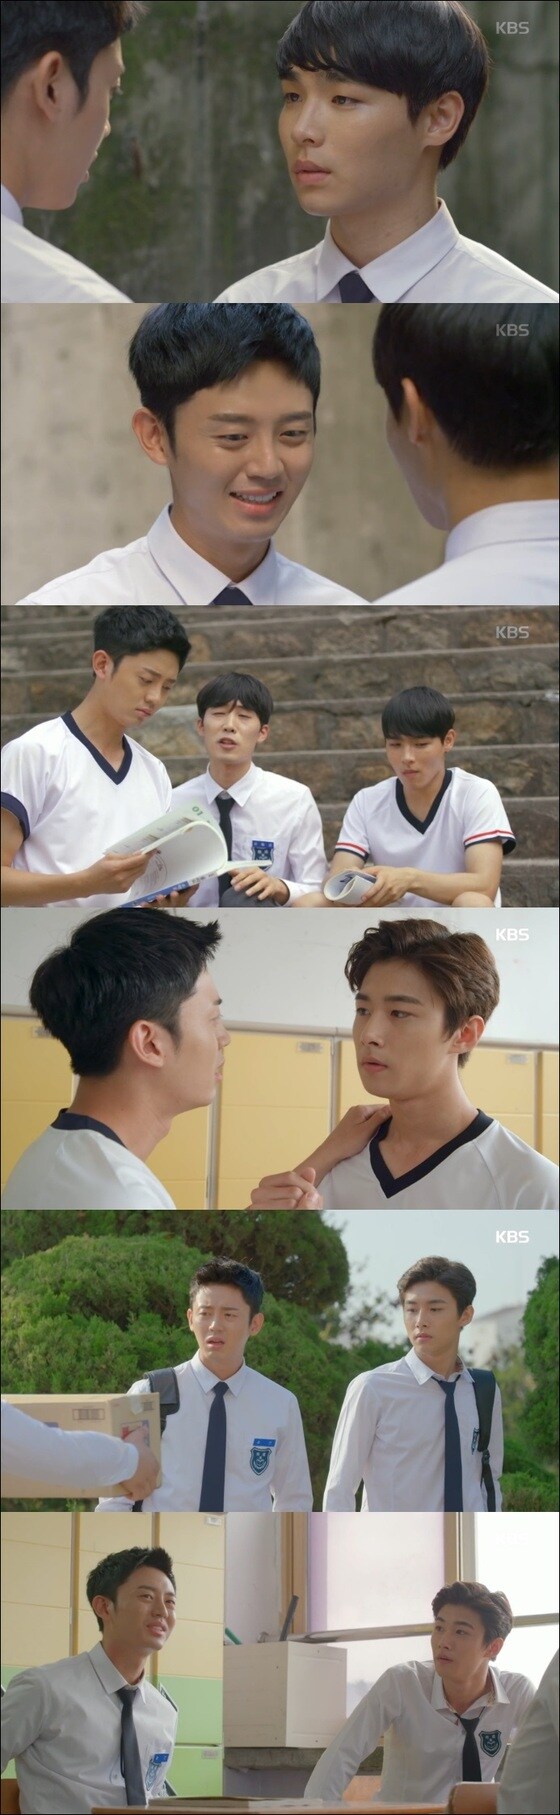 '전설의 셔틀'에는 이지훈, 김진우, 서지훈 등이 출연했다. © News1star / KBS2 '전설의 셔틀' 캡처